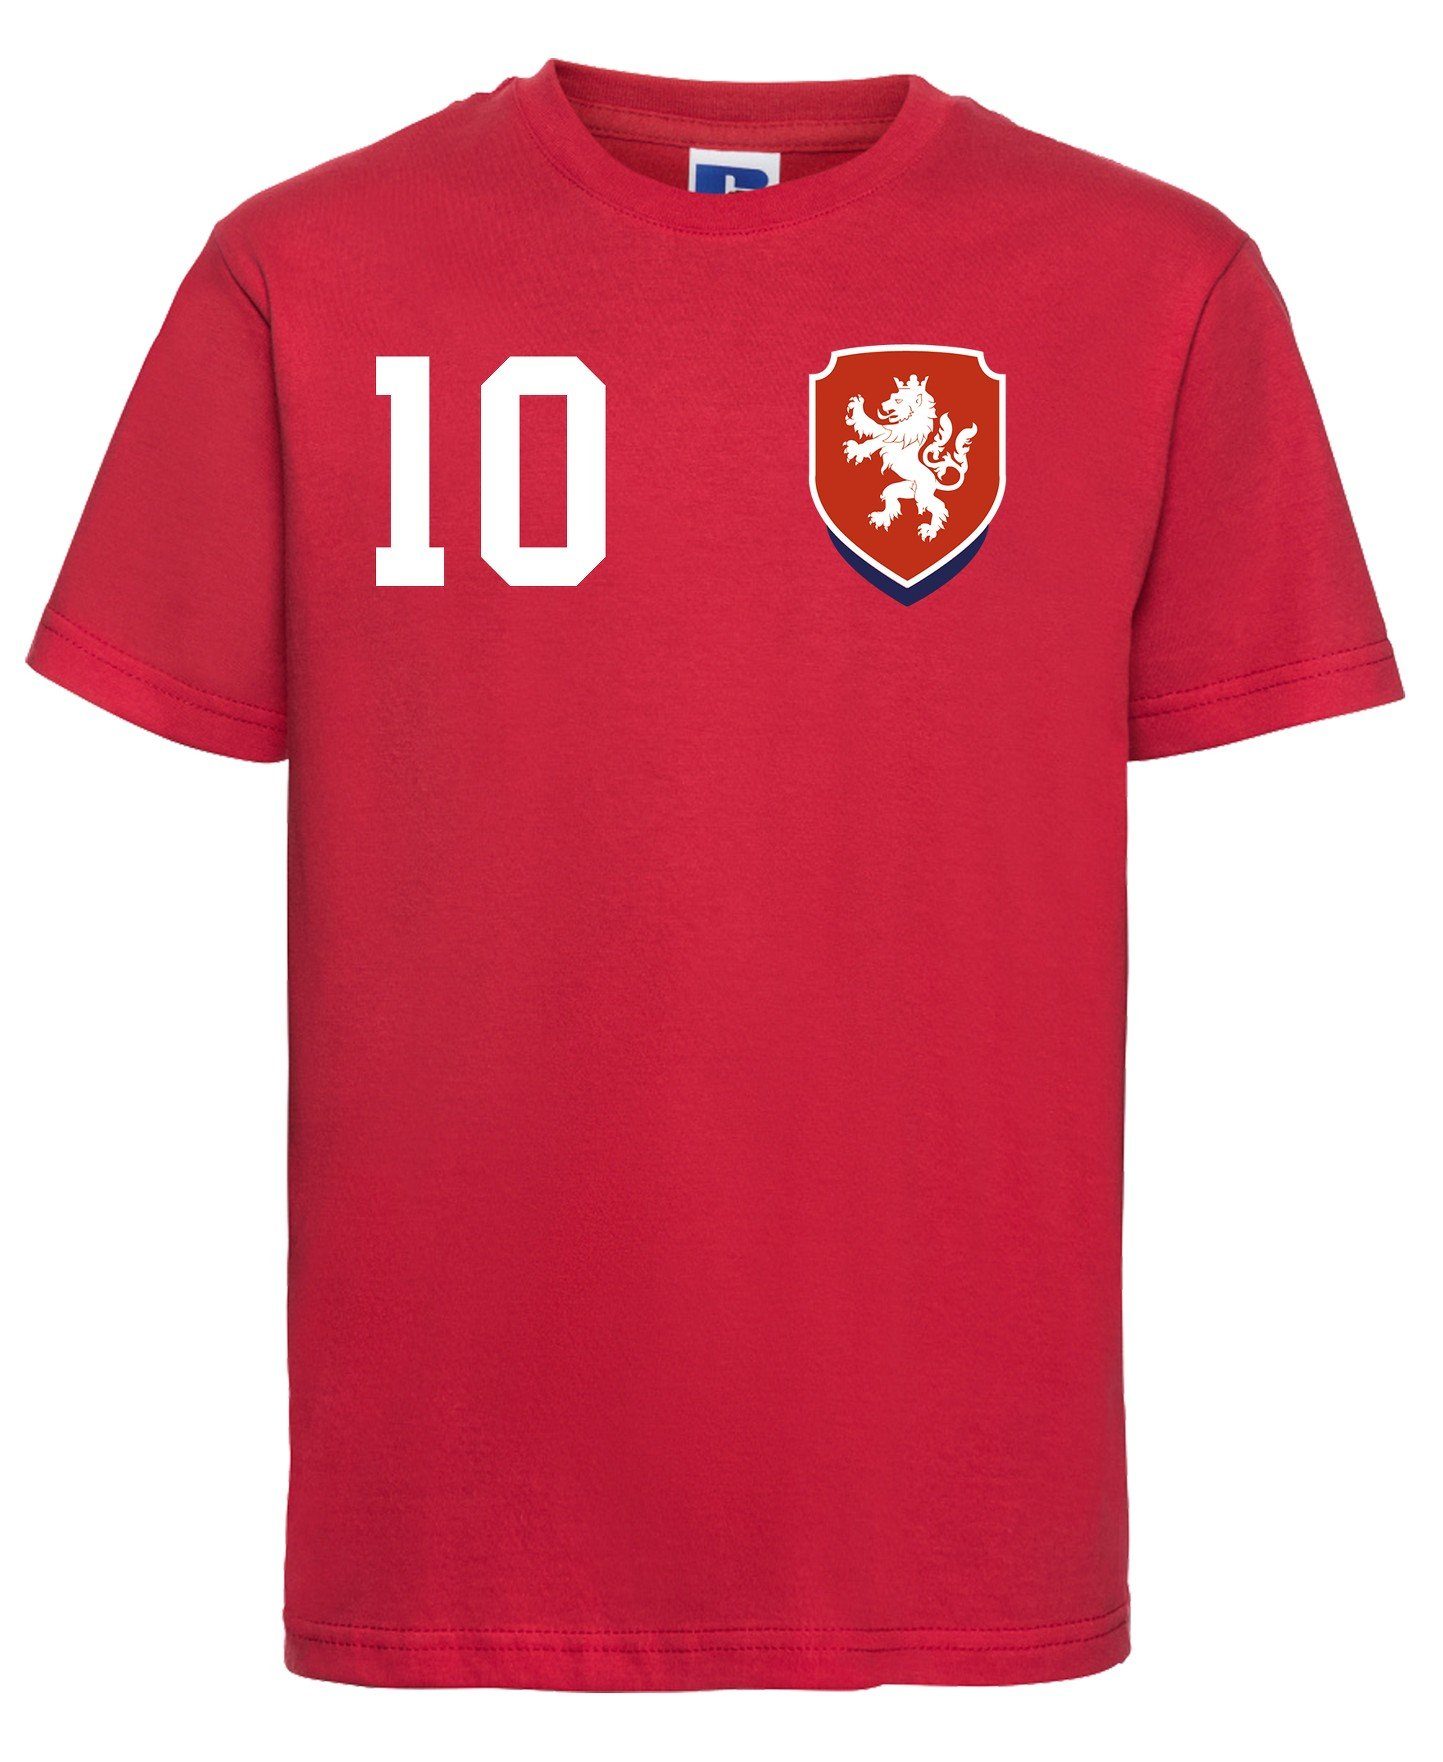 Tschechien EM 2020 Fanshirt Unisex Fanartikel Fußball Fan Kinder T-Shirt Trikot 